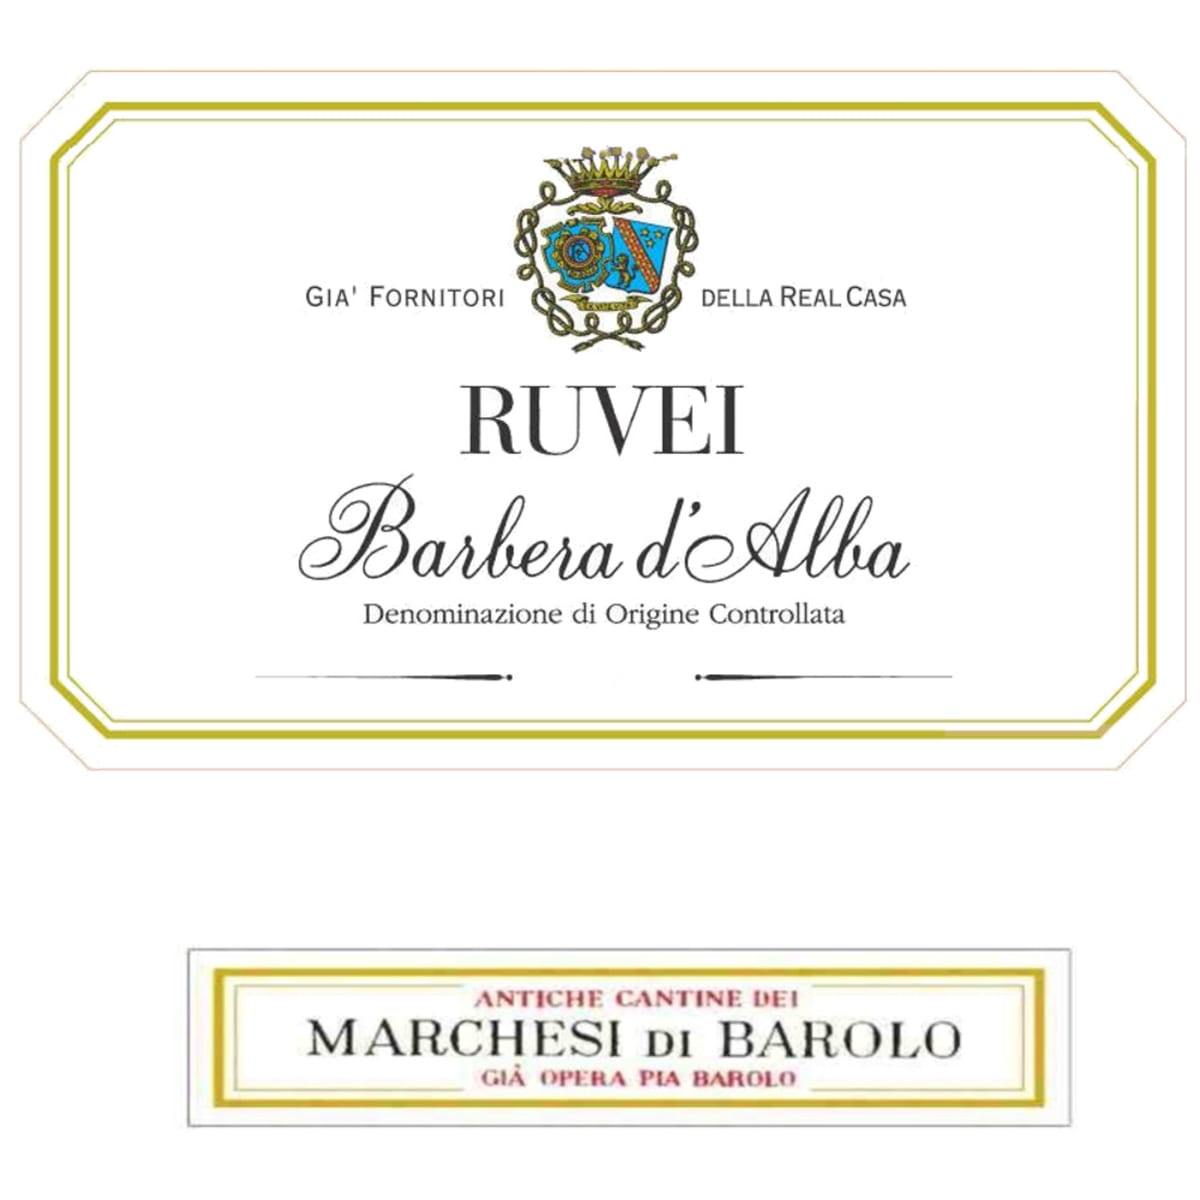 Marchesi di Barolo Barbera d'Alba Ruvei 2008 Front Label